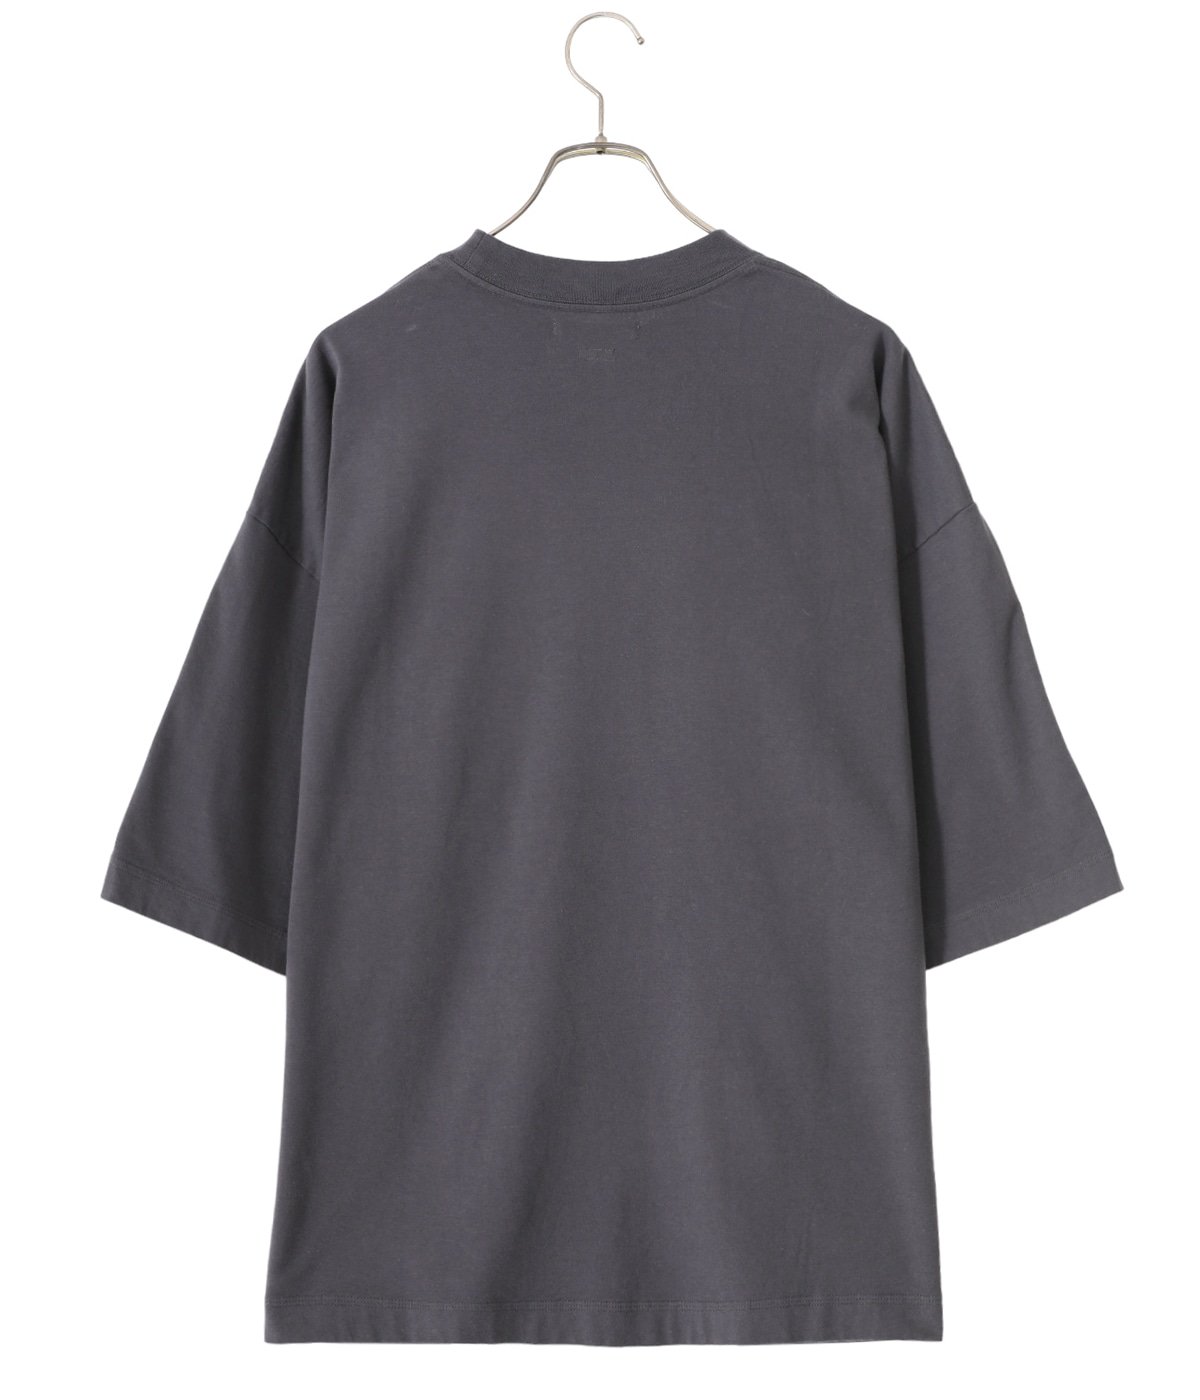 BLURHMS(ブラームス) メンズ トップス Tシャツ・カットソー日本サイズ